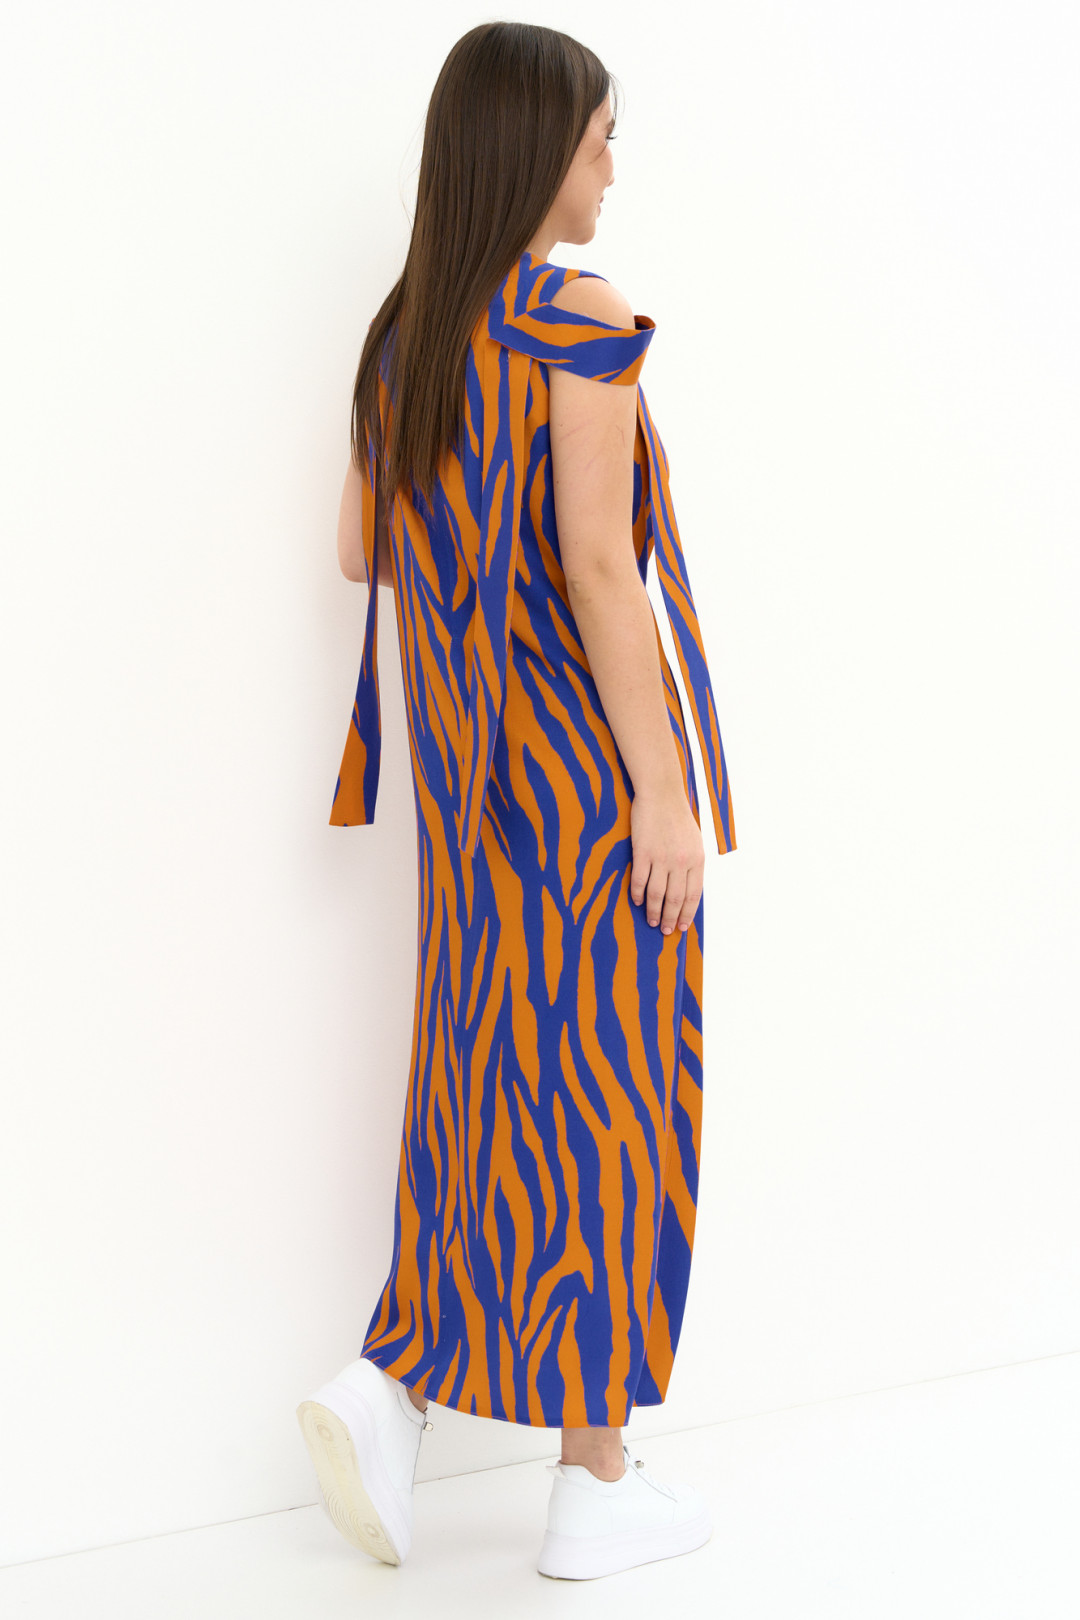 Платье Магия Моды 2254 оранж+синий